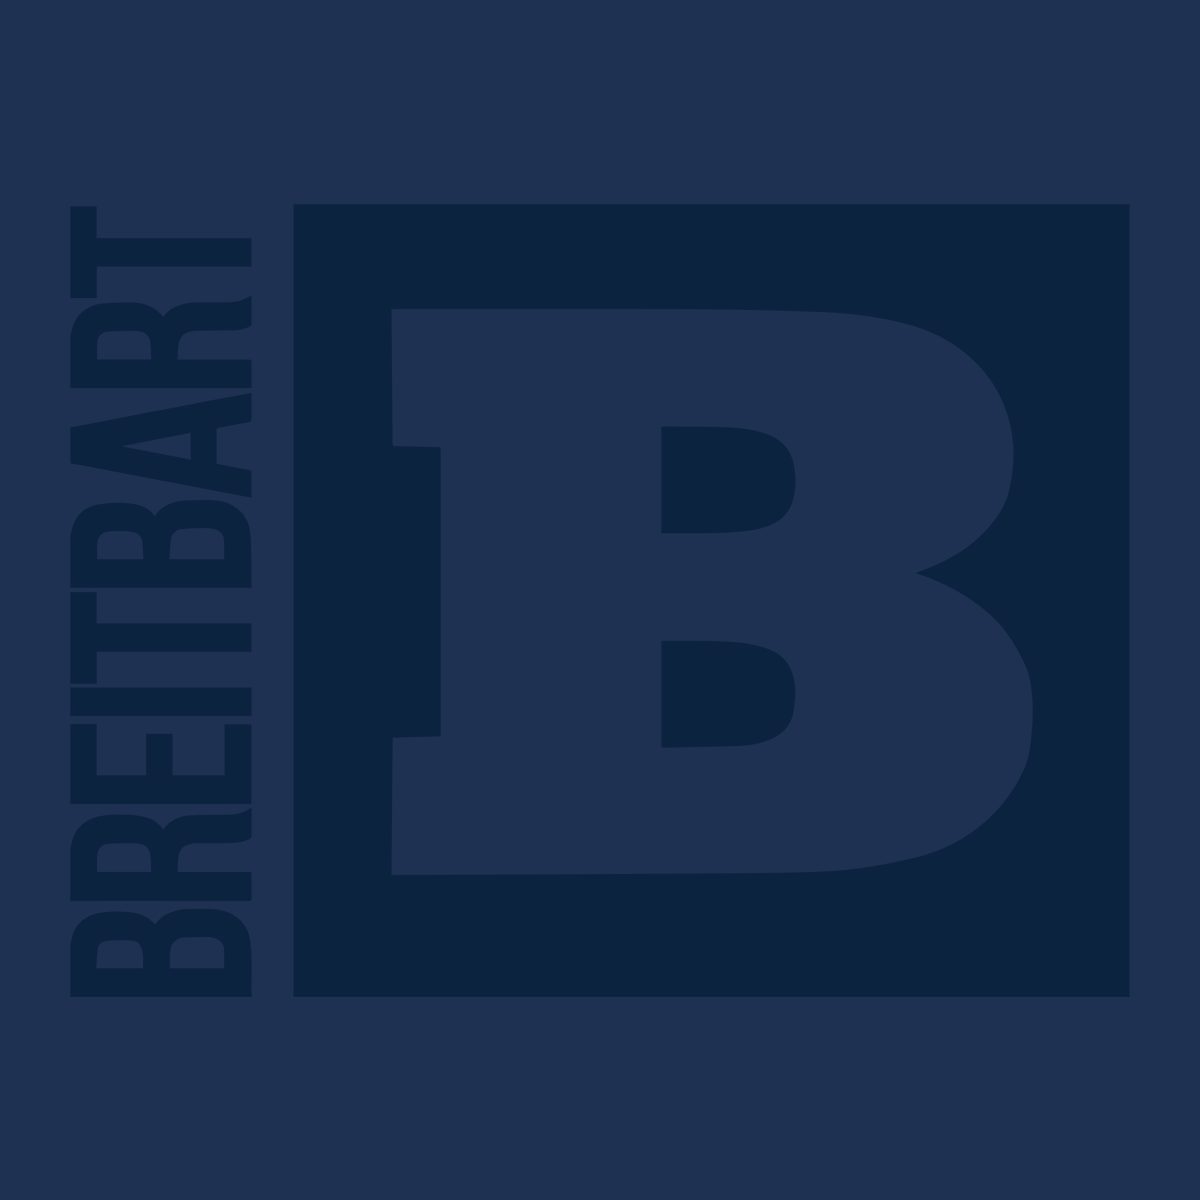 Official Breitbart Logo T-Shirt - Navy